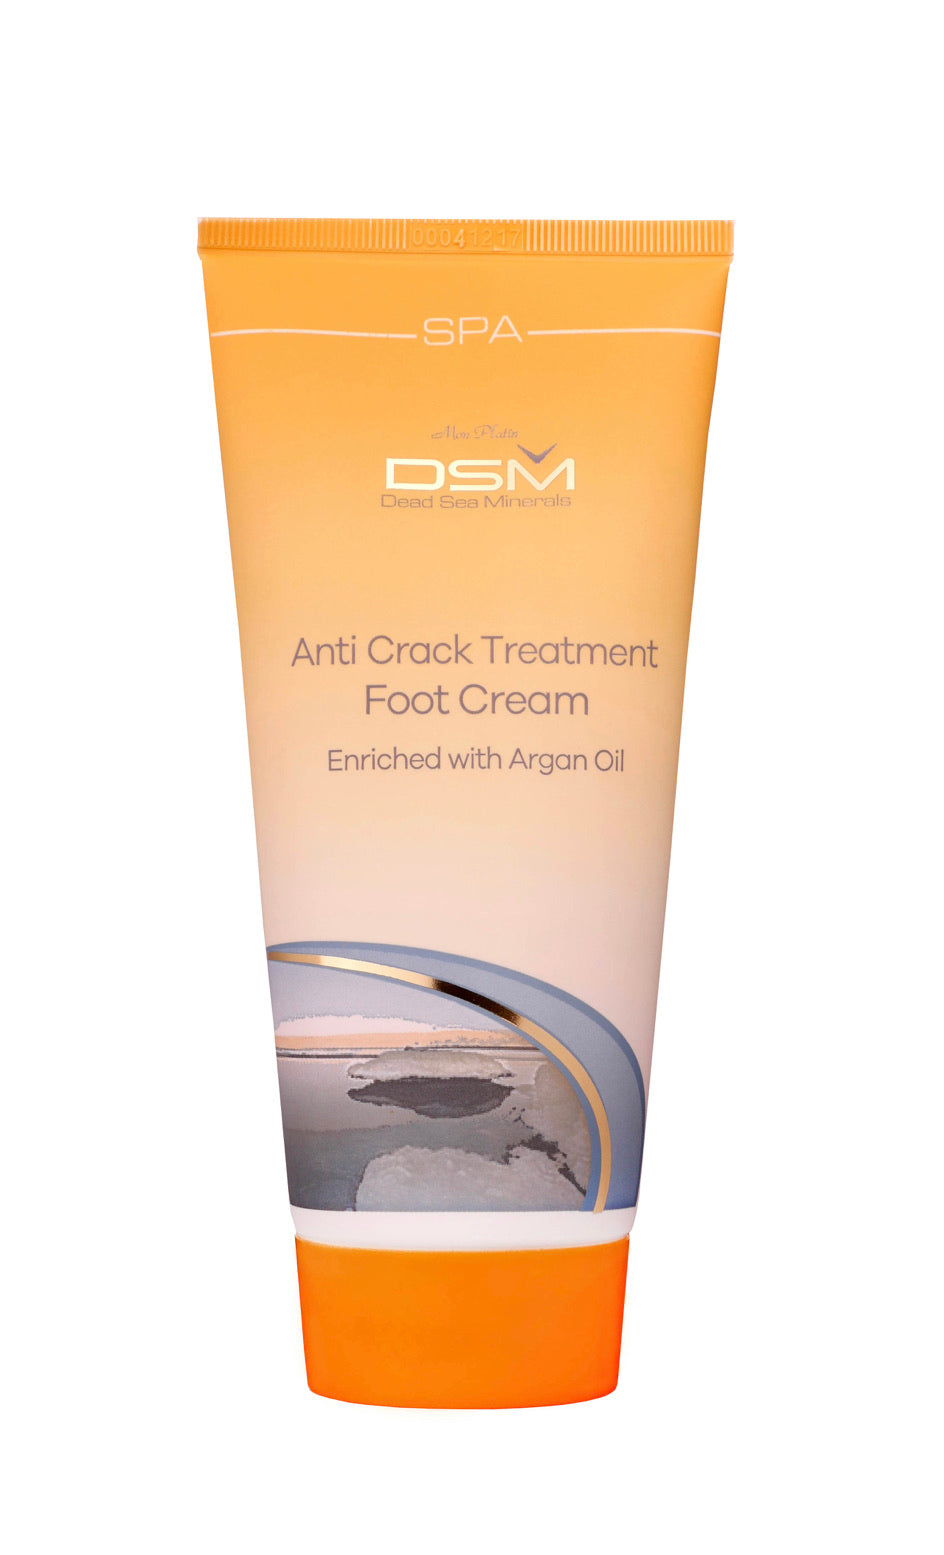 Anti Crack Treatment Fotkrem med Argan Oil (Anti Crack Treatment Foot Cream, Argan Oil) DSM108